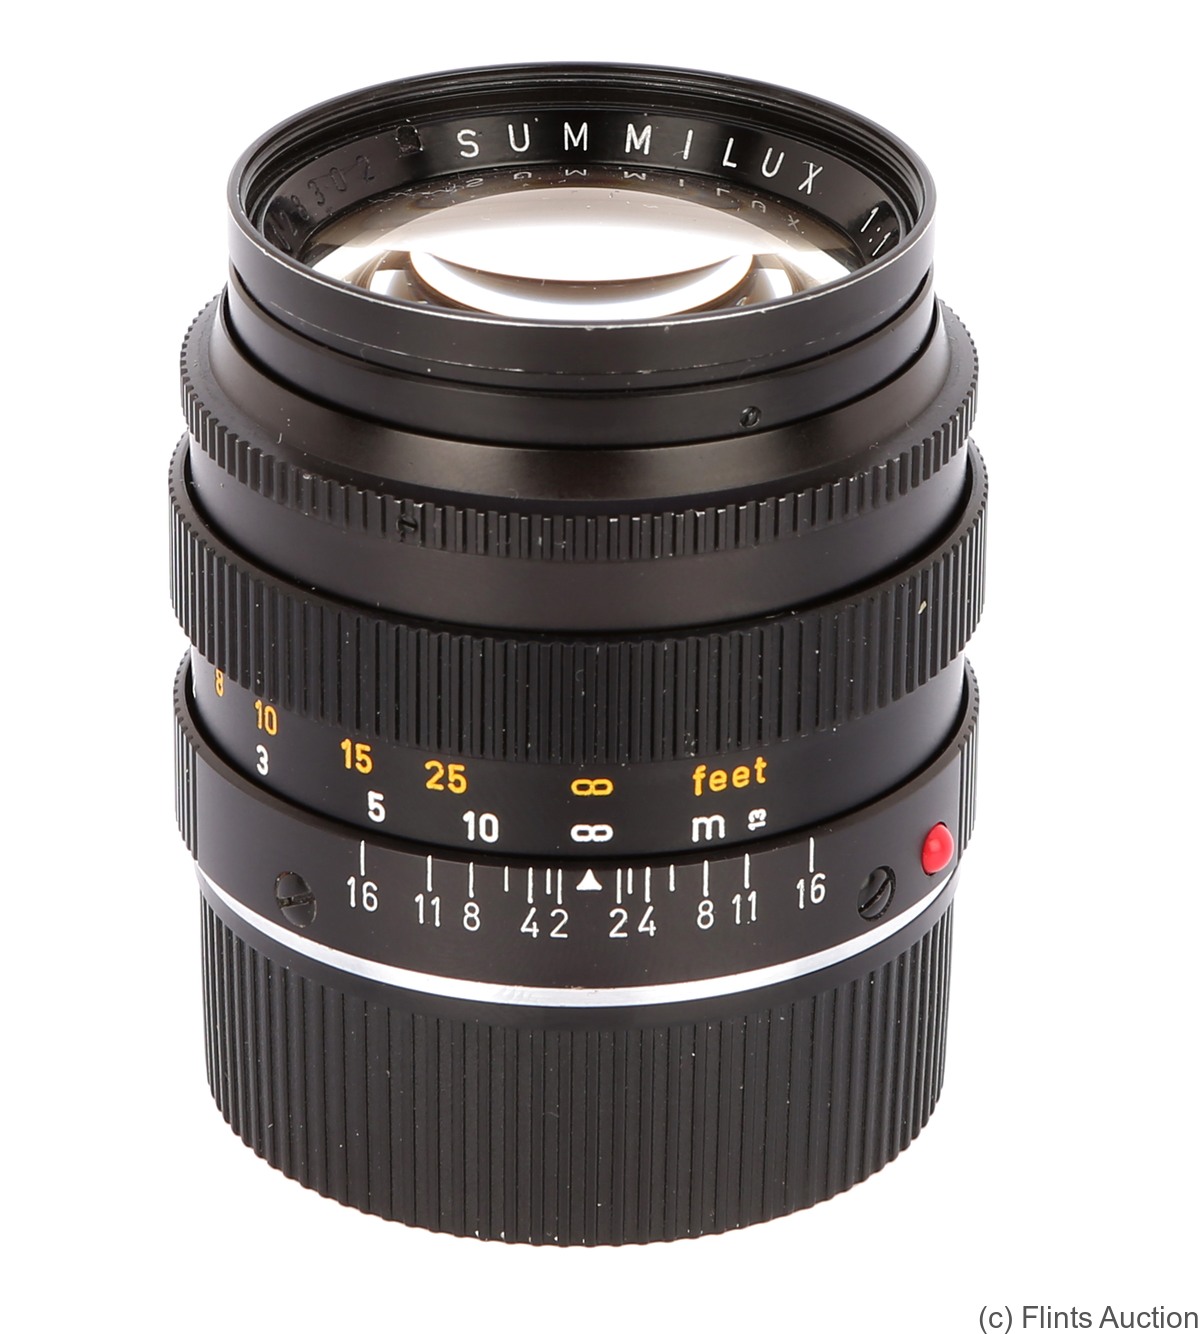 Leitz: 50mm (5cm) f1.4 Summilux-M (BM, black, 11114) camera